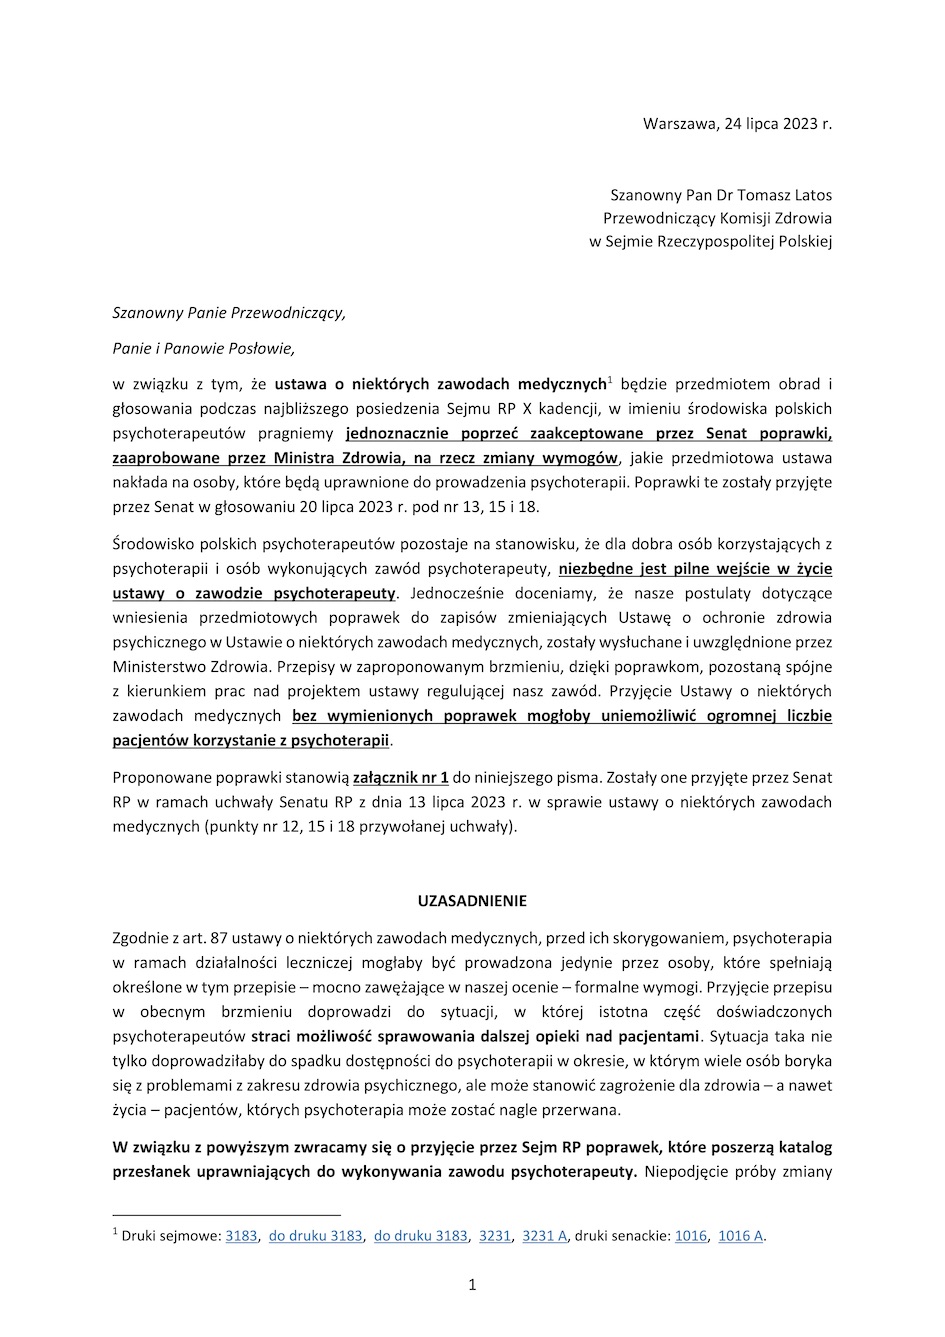 Pismo do Sejmowej Komisji Zdrowia 25 07 2023